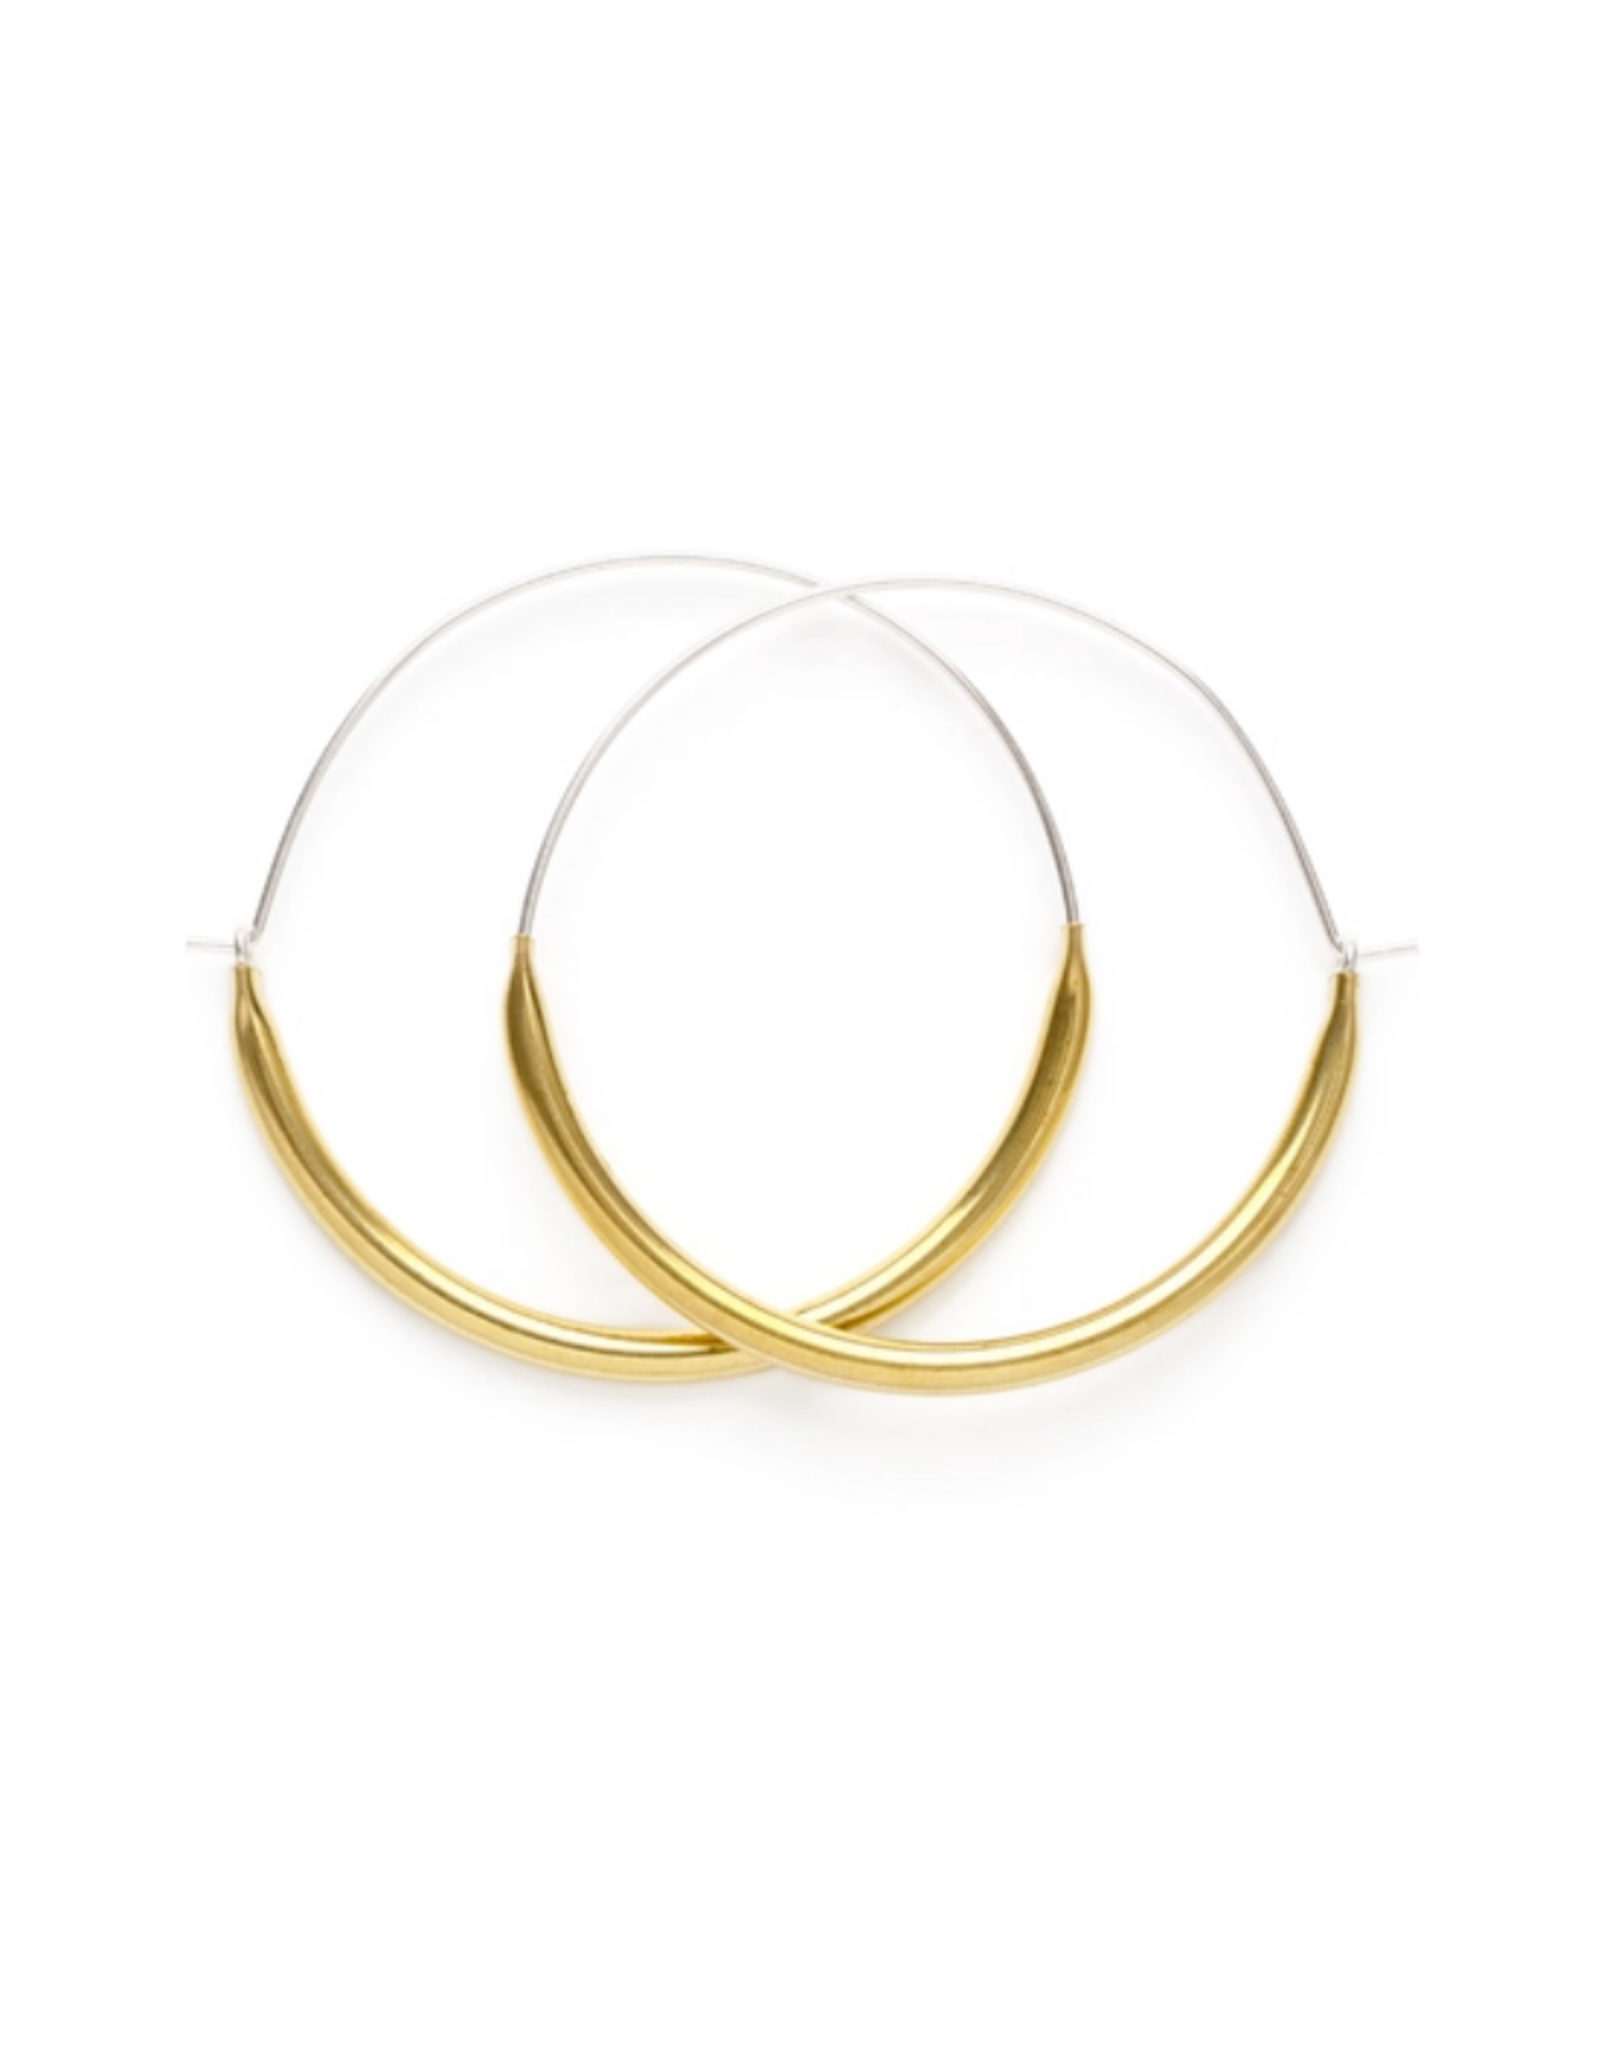 Faire/Minds Eye Design EARRINGS-TUBE HOOPS LG, GOLD